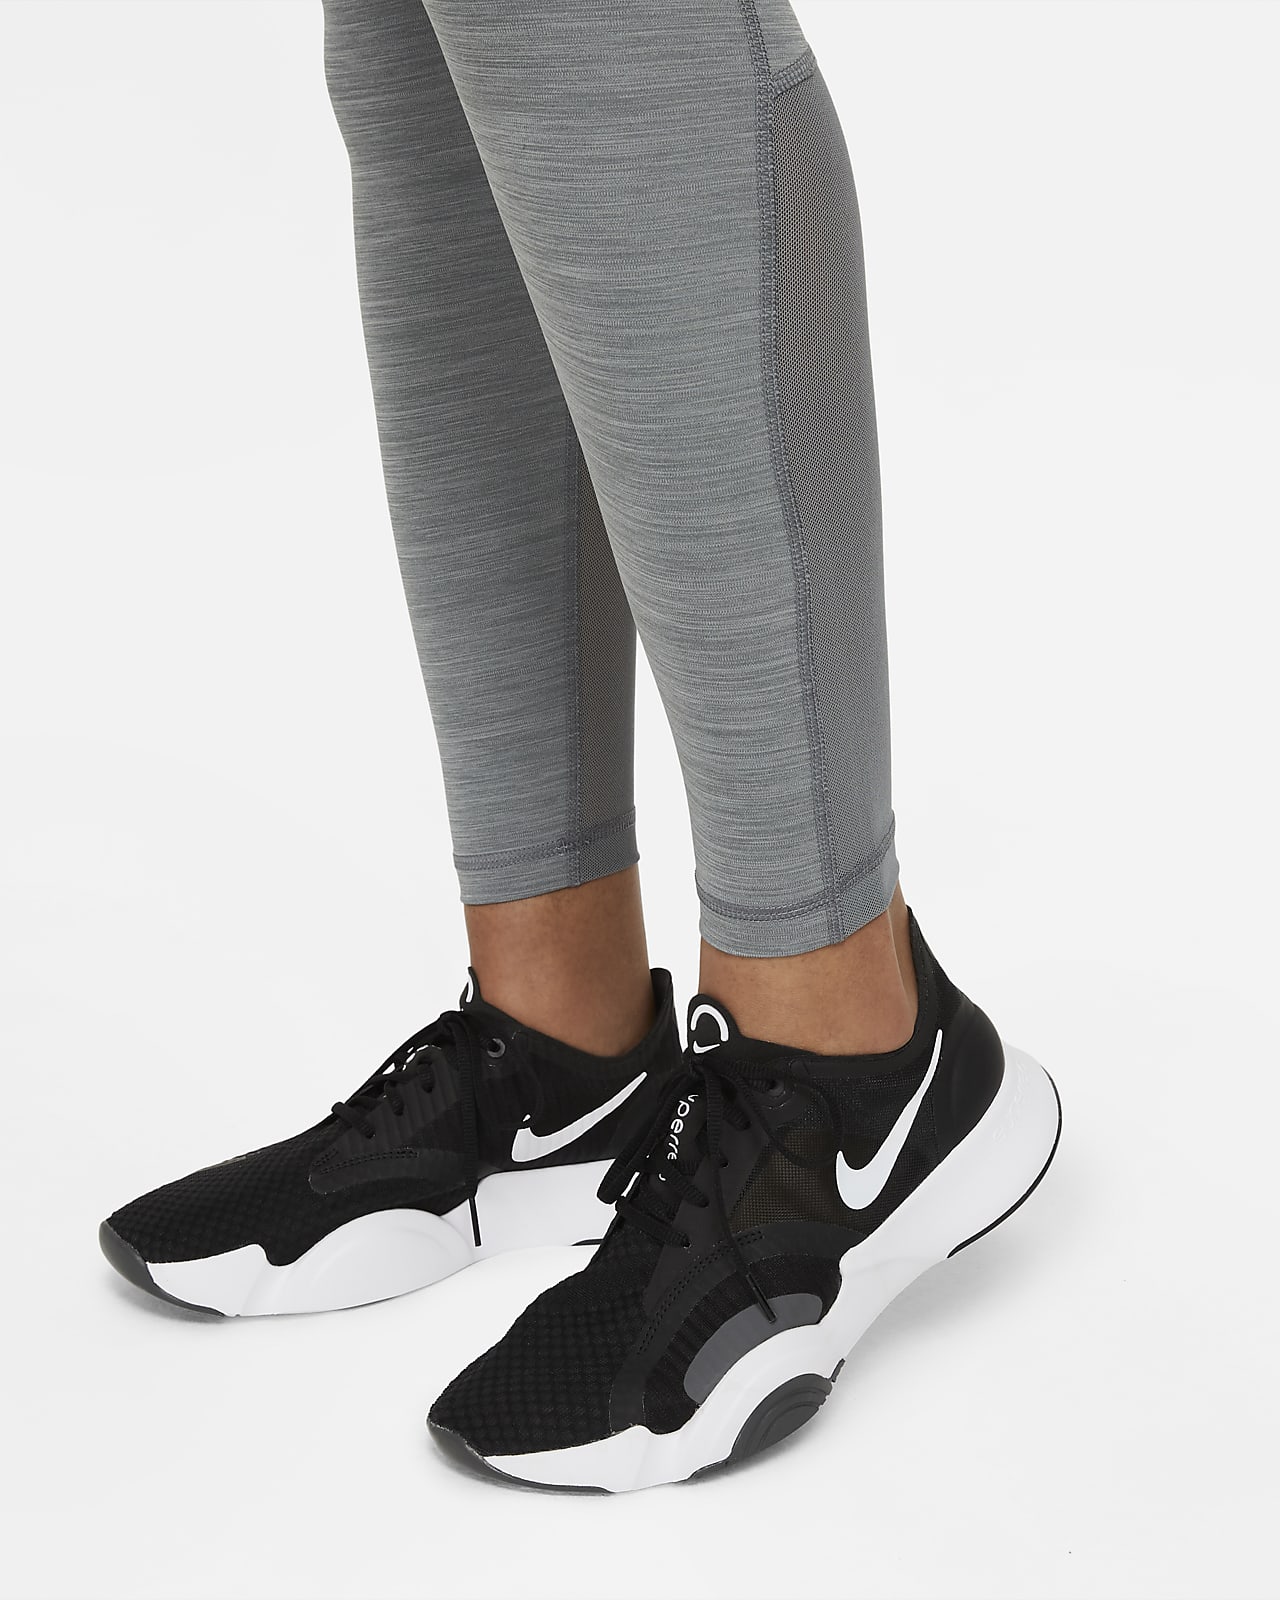 Nike Pro Normal Belli File Panelli Siyah Kadın Tayt Fiyatı, Yorumları -  Trendyol